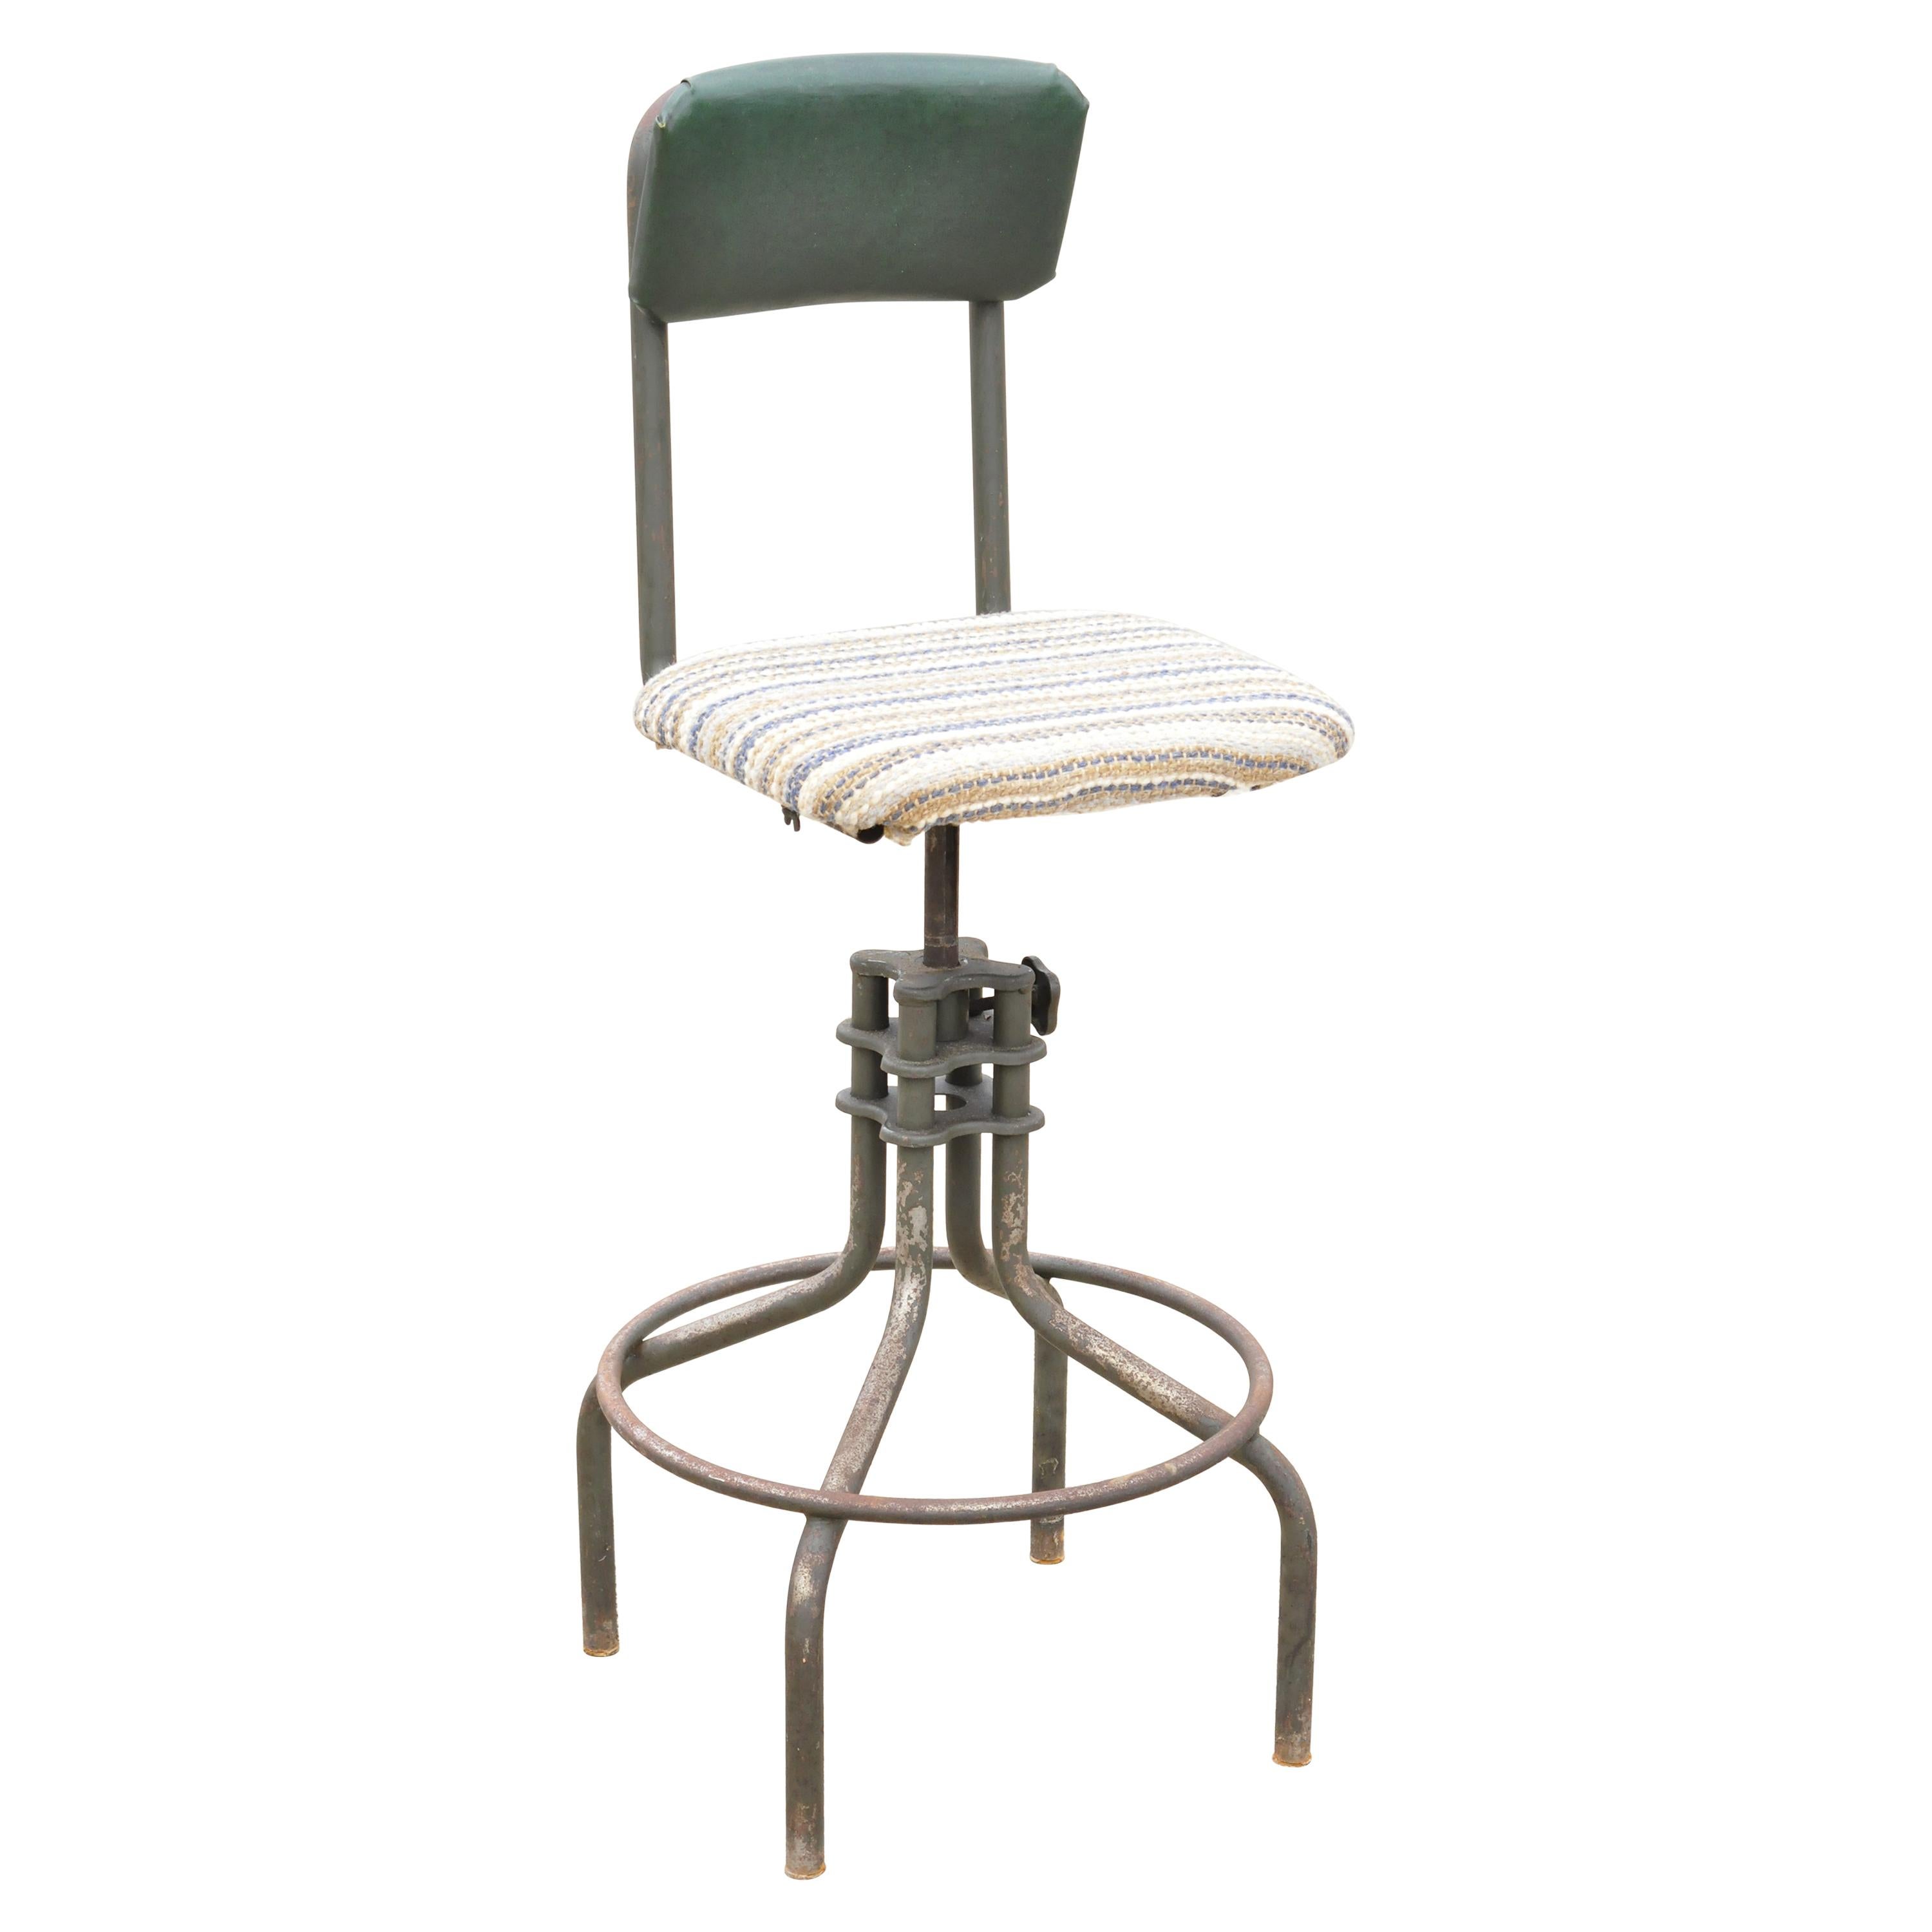 Antique American Industrial Adjustable Steel Metal Drafting Stool Work Chair